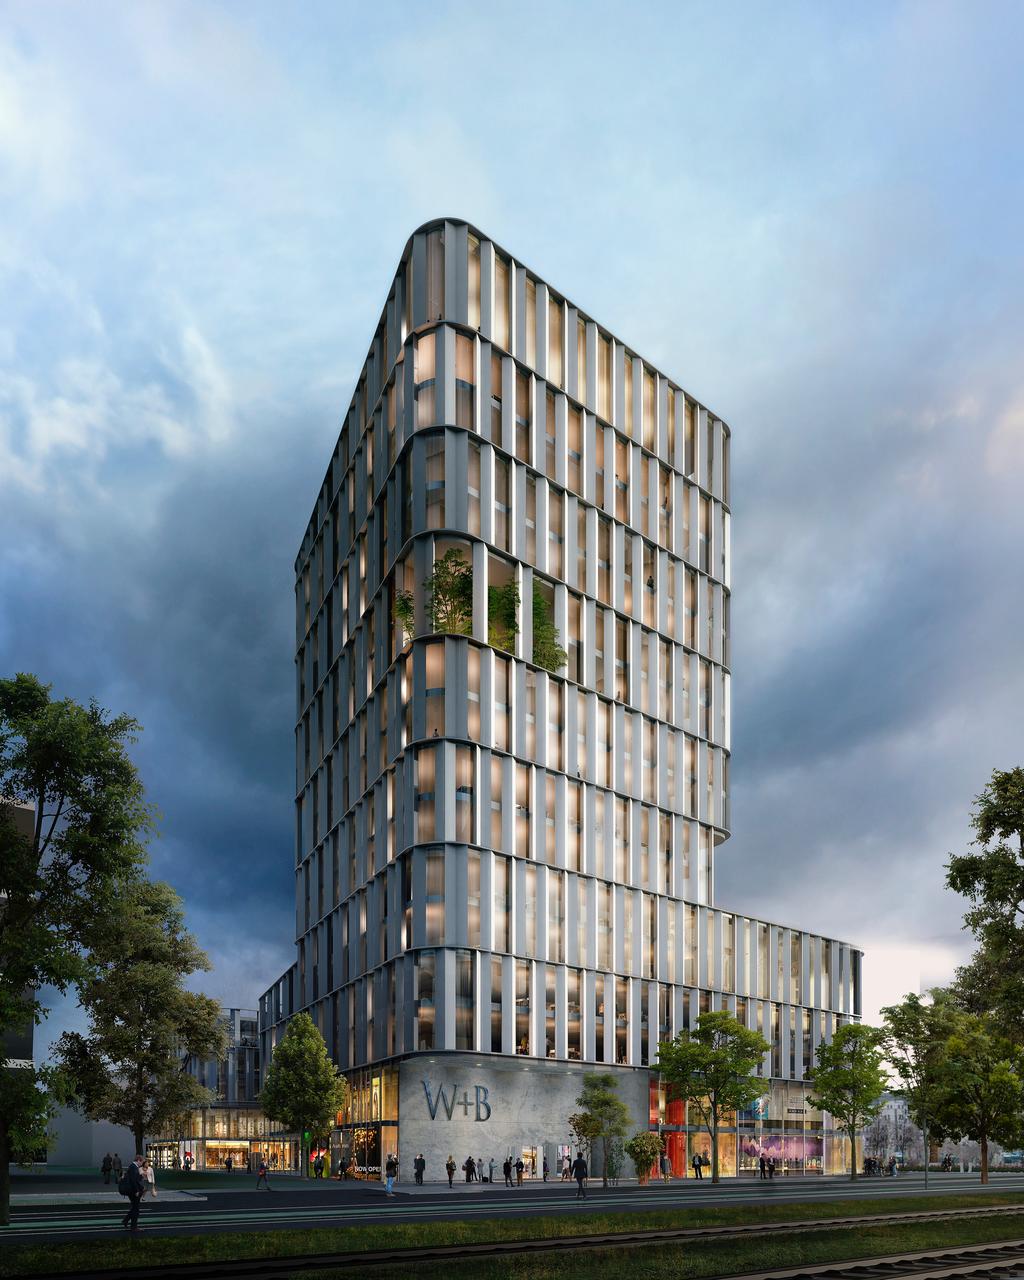 Über die Projektpartner WÖHR + BAUER plant, entwickelt und realisiert anspruchsvolle Immobilien im urbanen Umfeld.